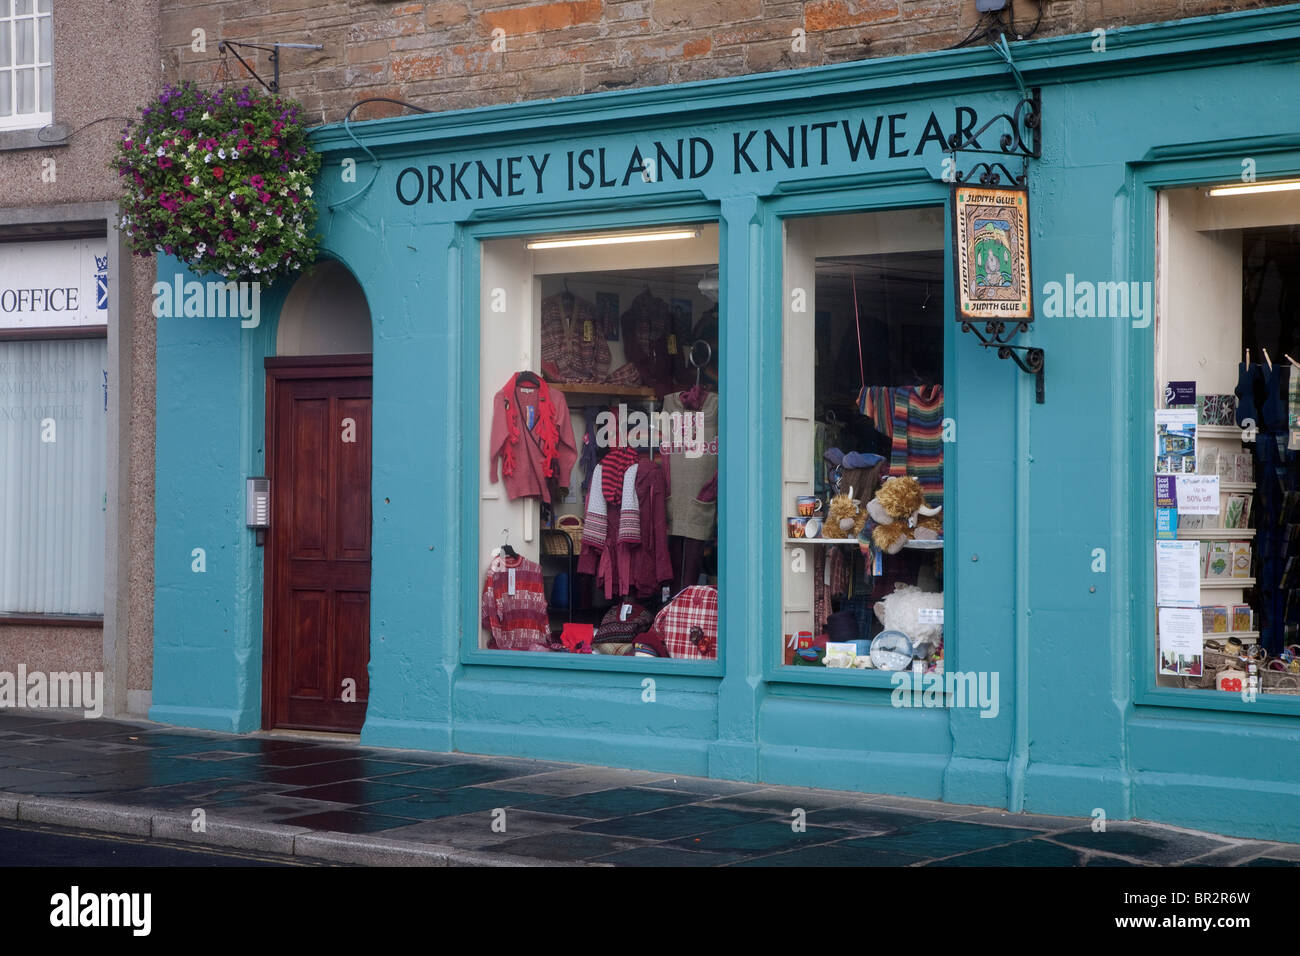 Orkney Island Knitwear Shop, Kirkwall, Orkney Islands, Scotland Stock Photo